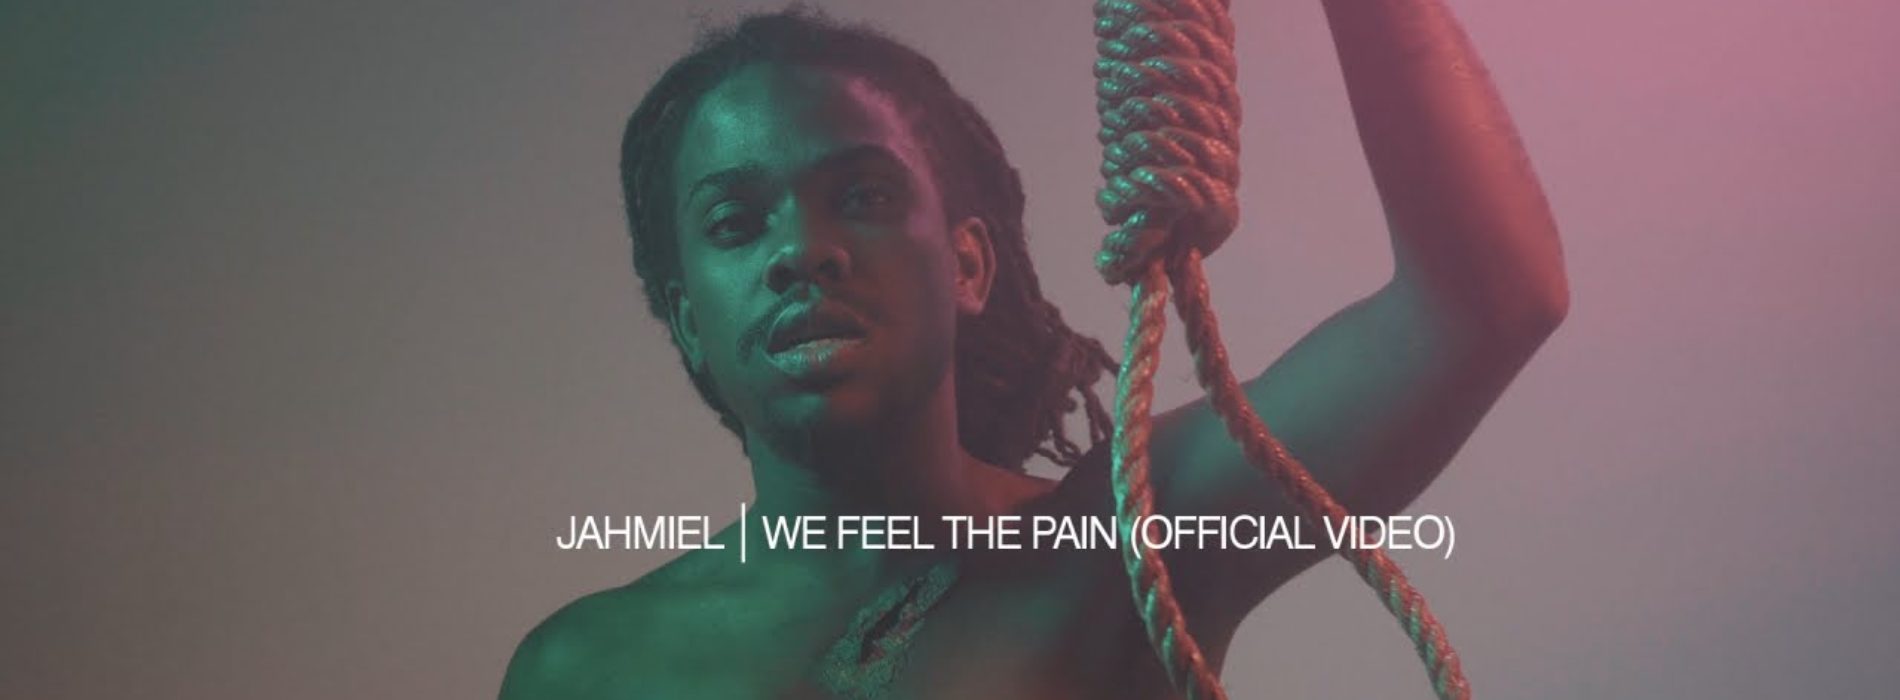 Jahmiel – We Feel The Pain (Official Video) – Novembre 2018